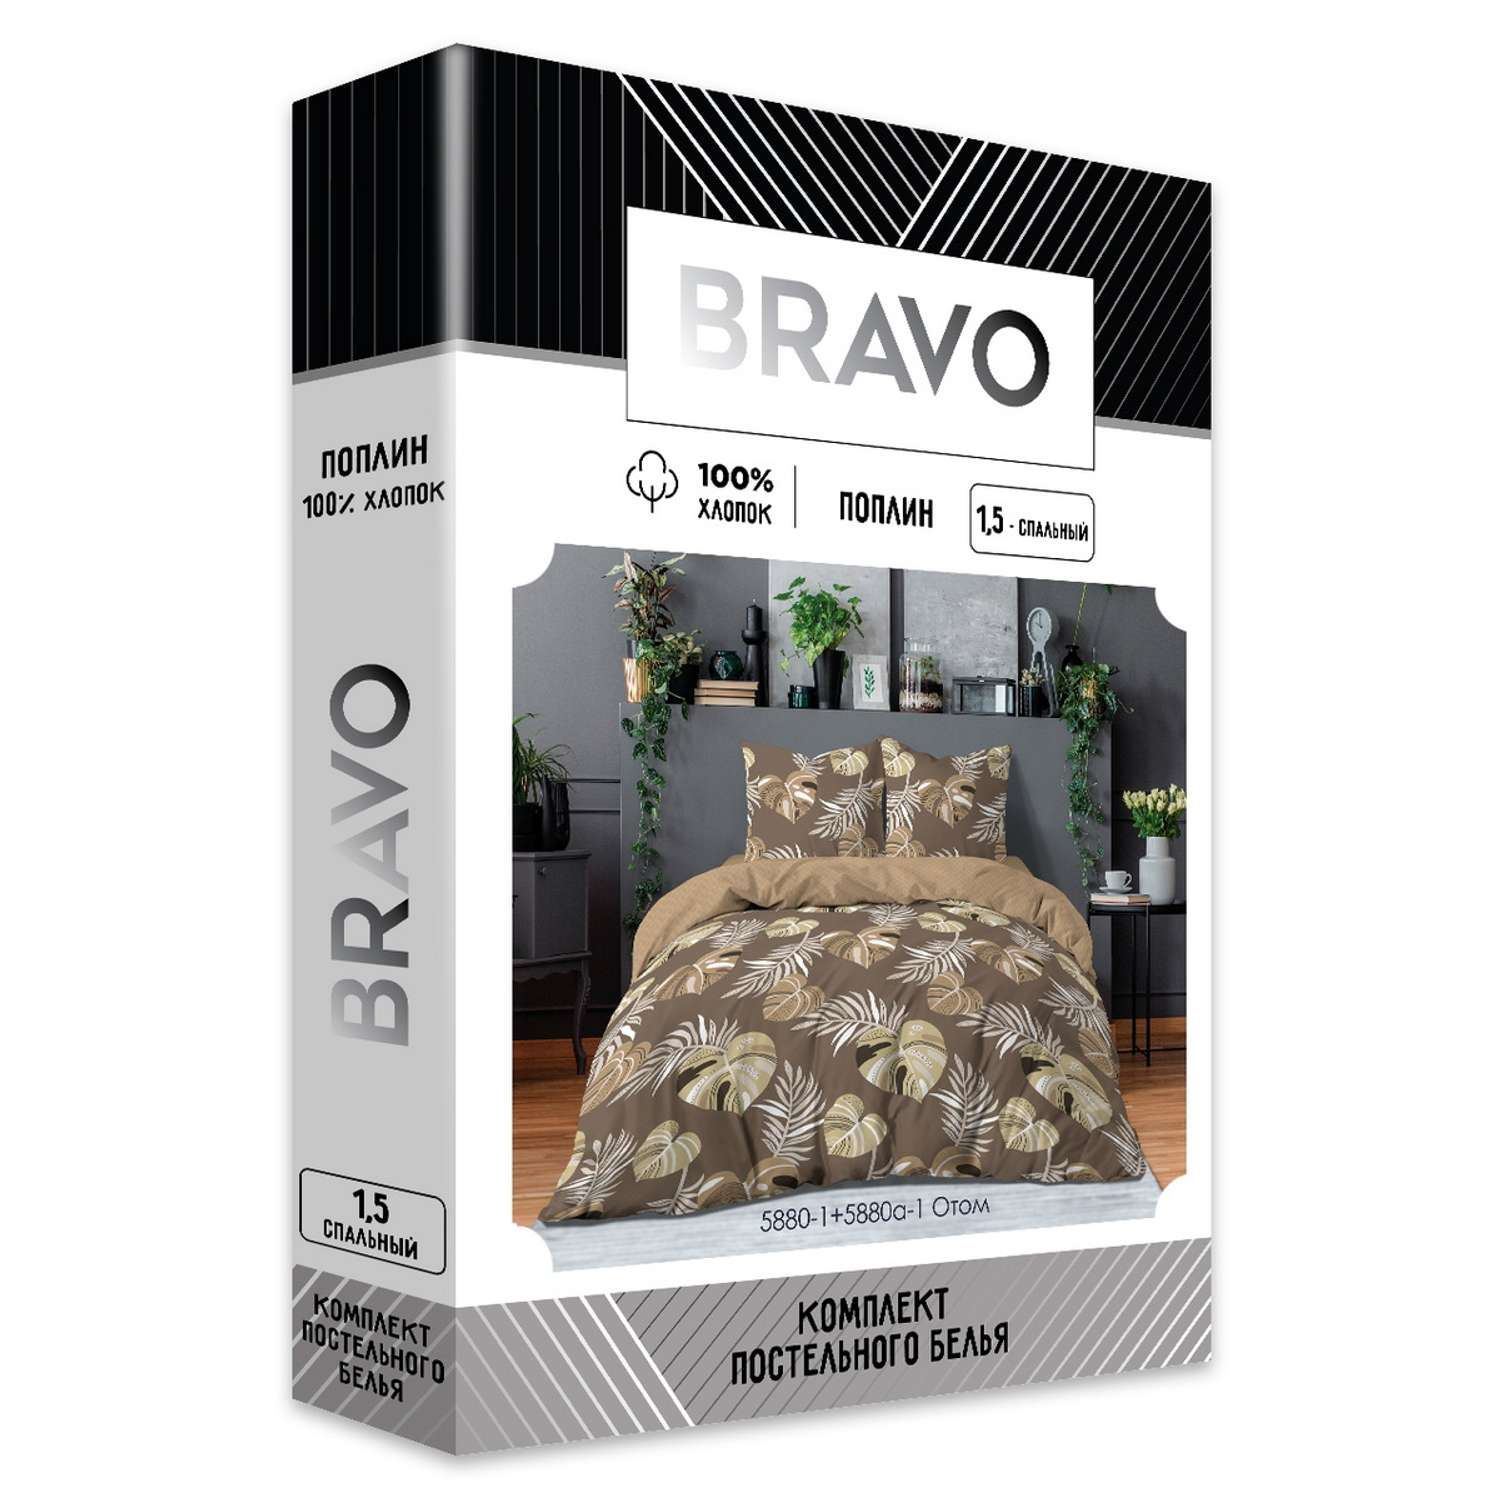 Комплект постельного белья Bravo Отом 1.5 спальный наволочки 70х70 м 101 рис 5880-1+5880а-1 - фото 9